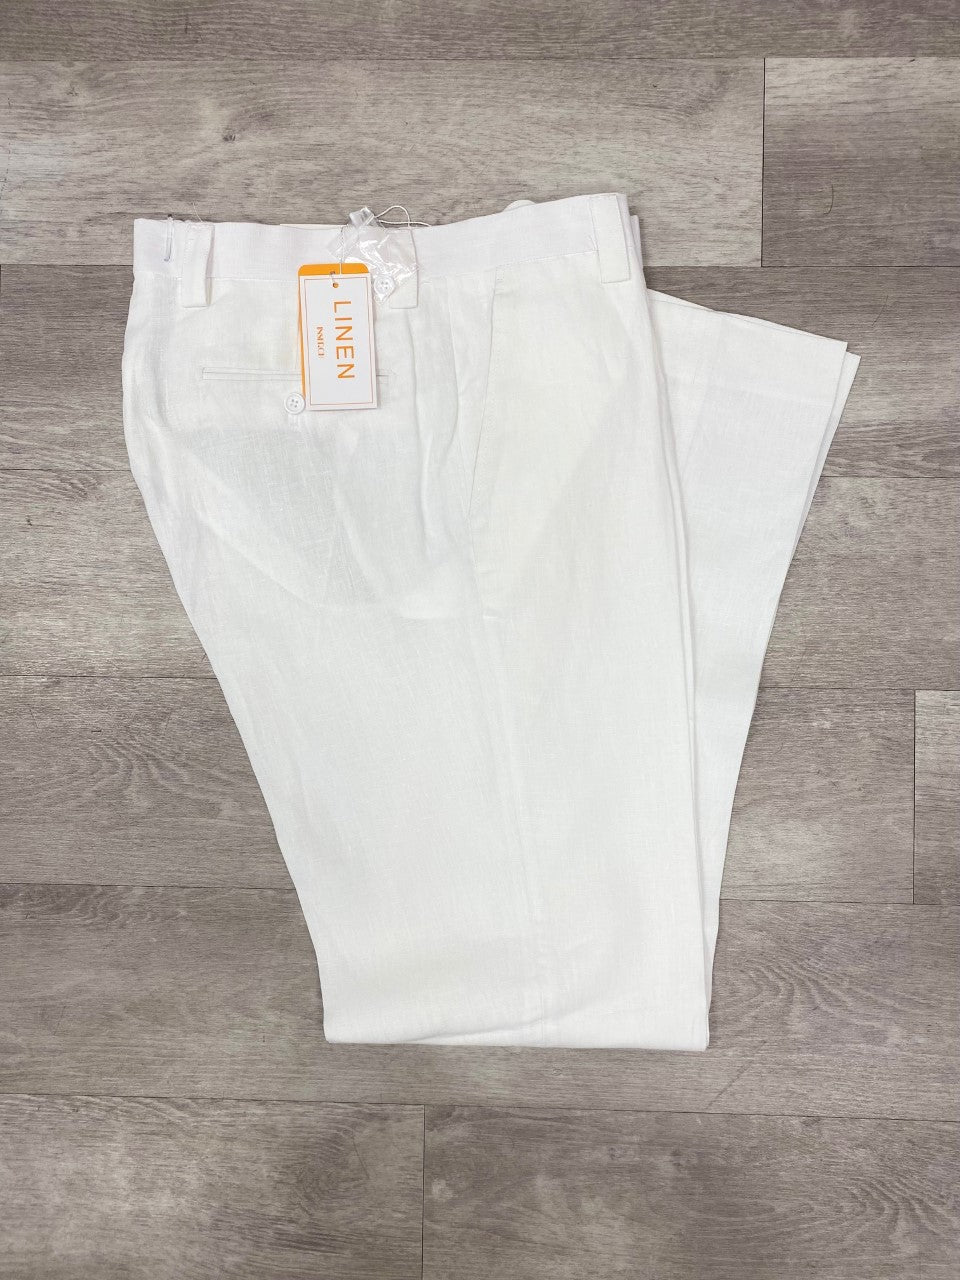 Inserch Premium Linen Flat Front Pants P3116 White